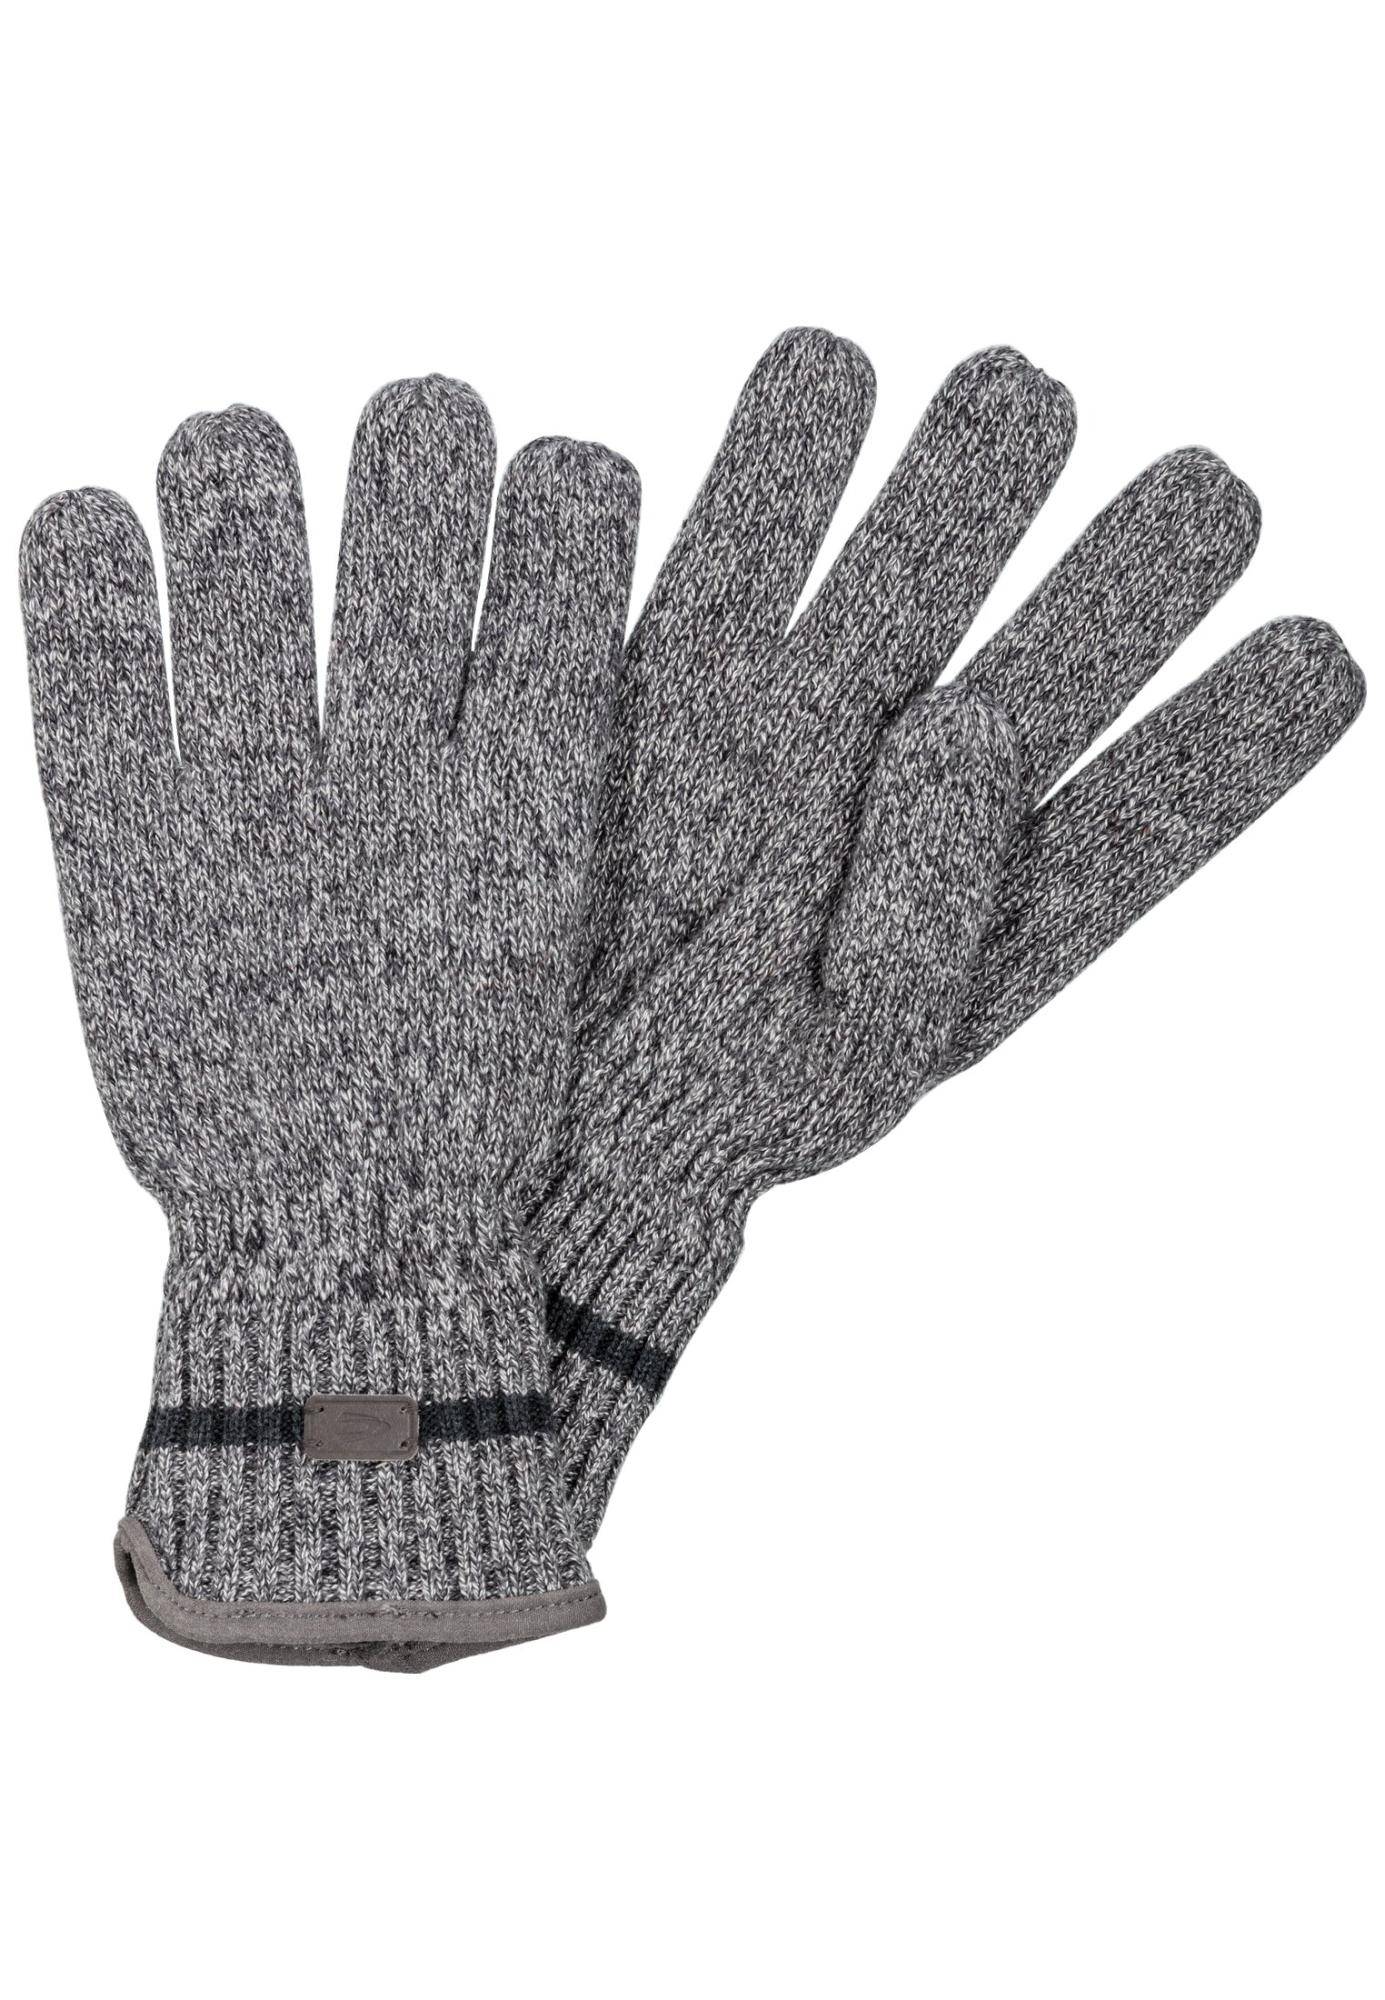 Мужские перчатки Camel Active, серые, цвет серый, размер 46